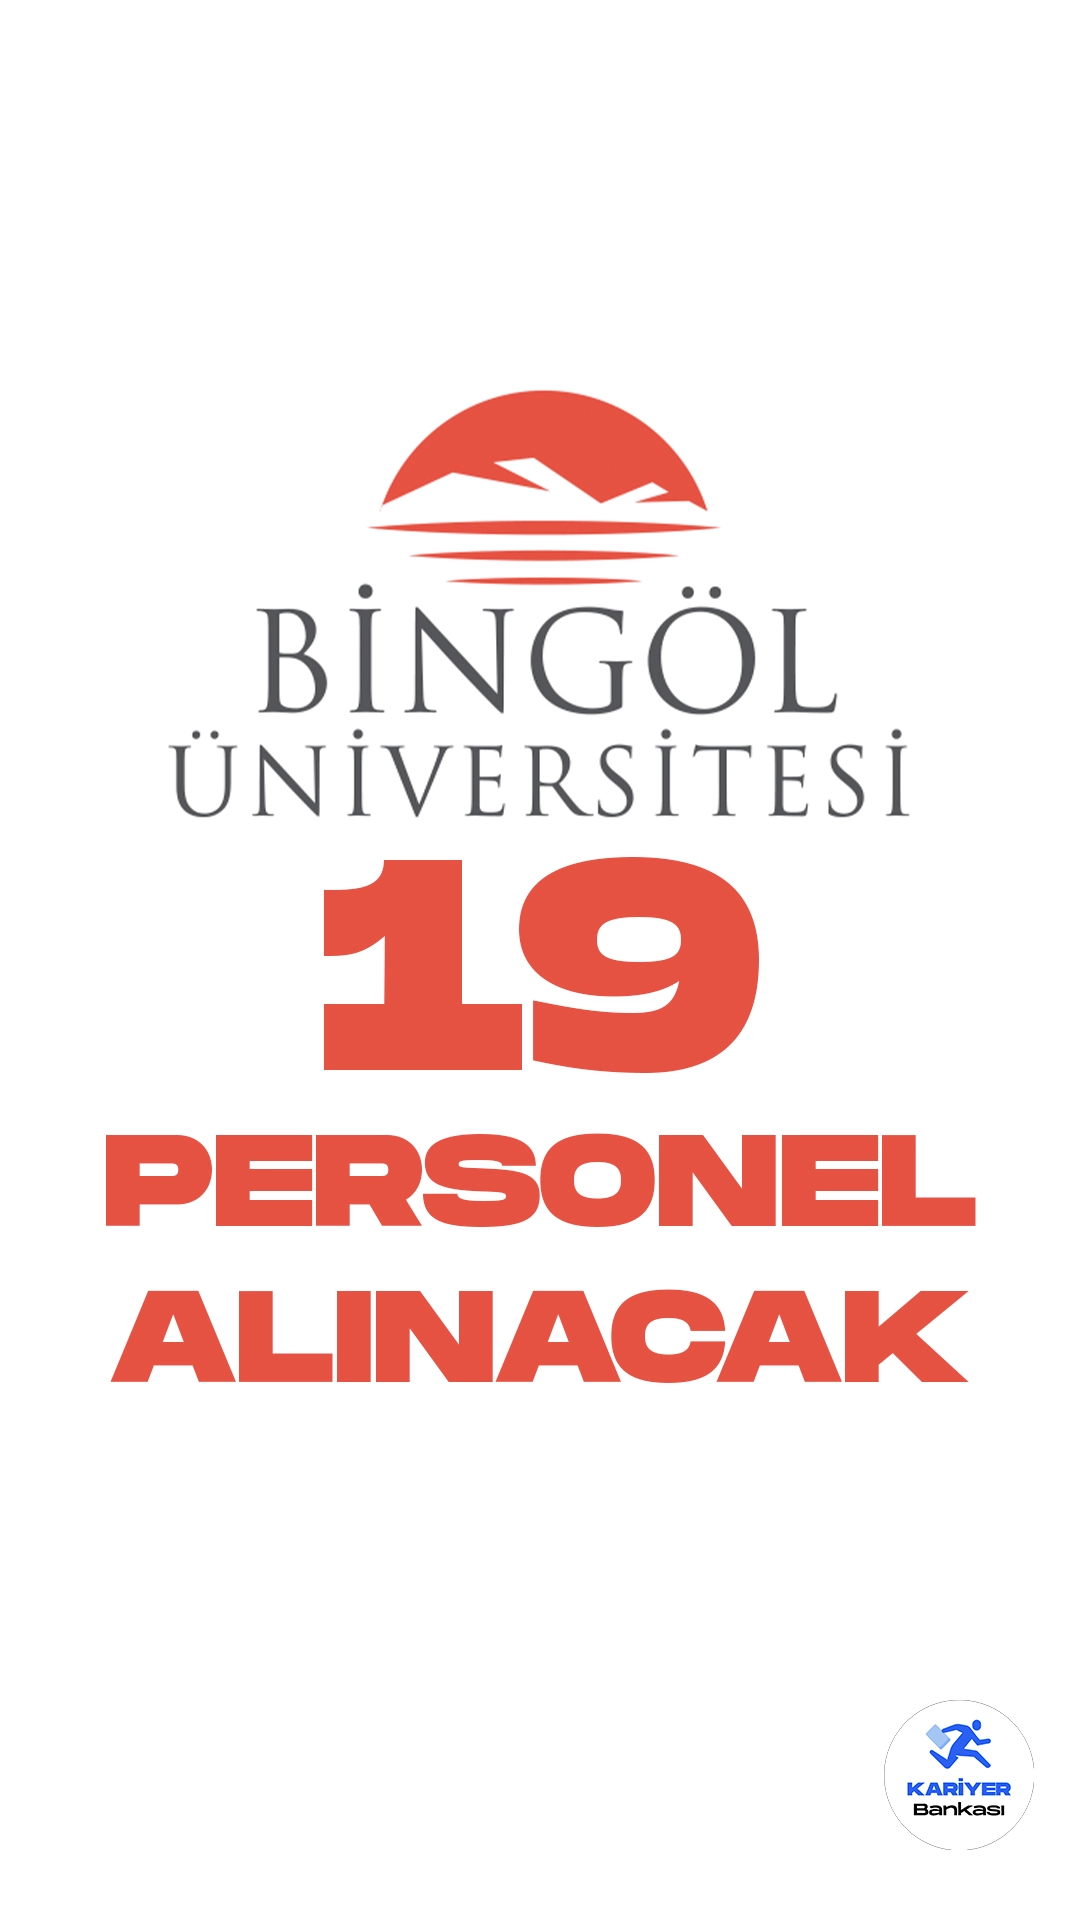 Bingöl Üniversitesi 19 Personel Alımı Yapacak. Bingöl Üniversitesi personel alımı duyurusu yayımlandı. Cumhurbaşkanlığı SBB'de yayımlanan duyuruda, Bingöl Üniversitesine destek personeli, koruma ve güvenlik görevlisi, büro personeli ünvanlarında sözleşmeli personel alımı yapılacağı aktarıldı.